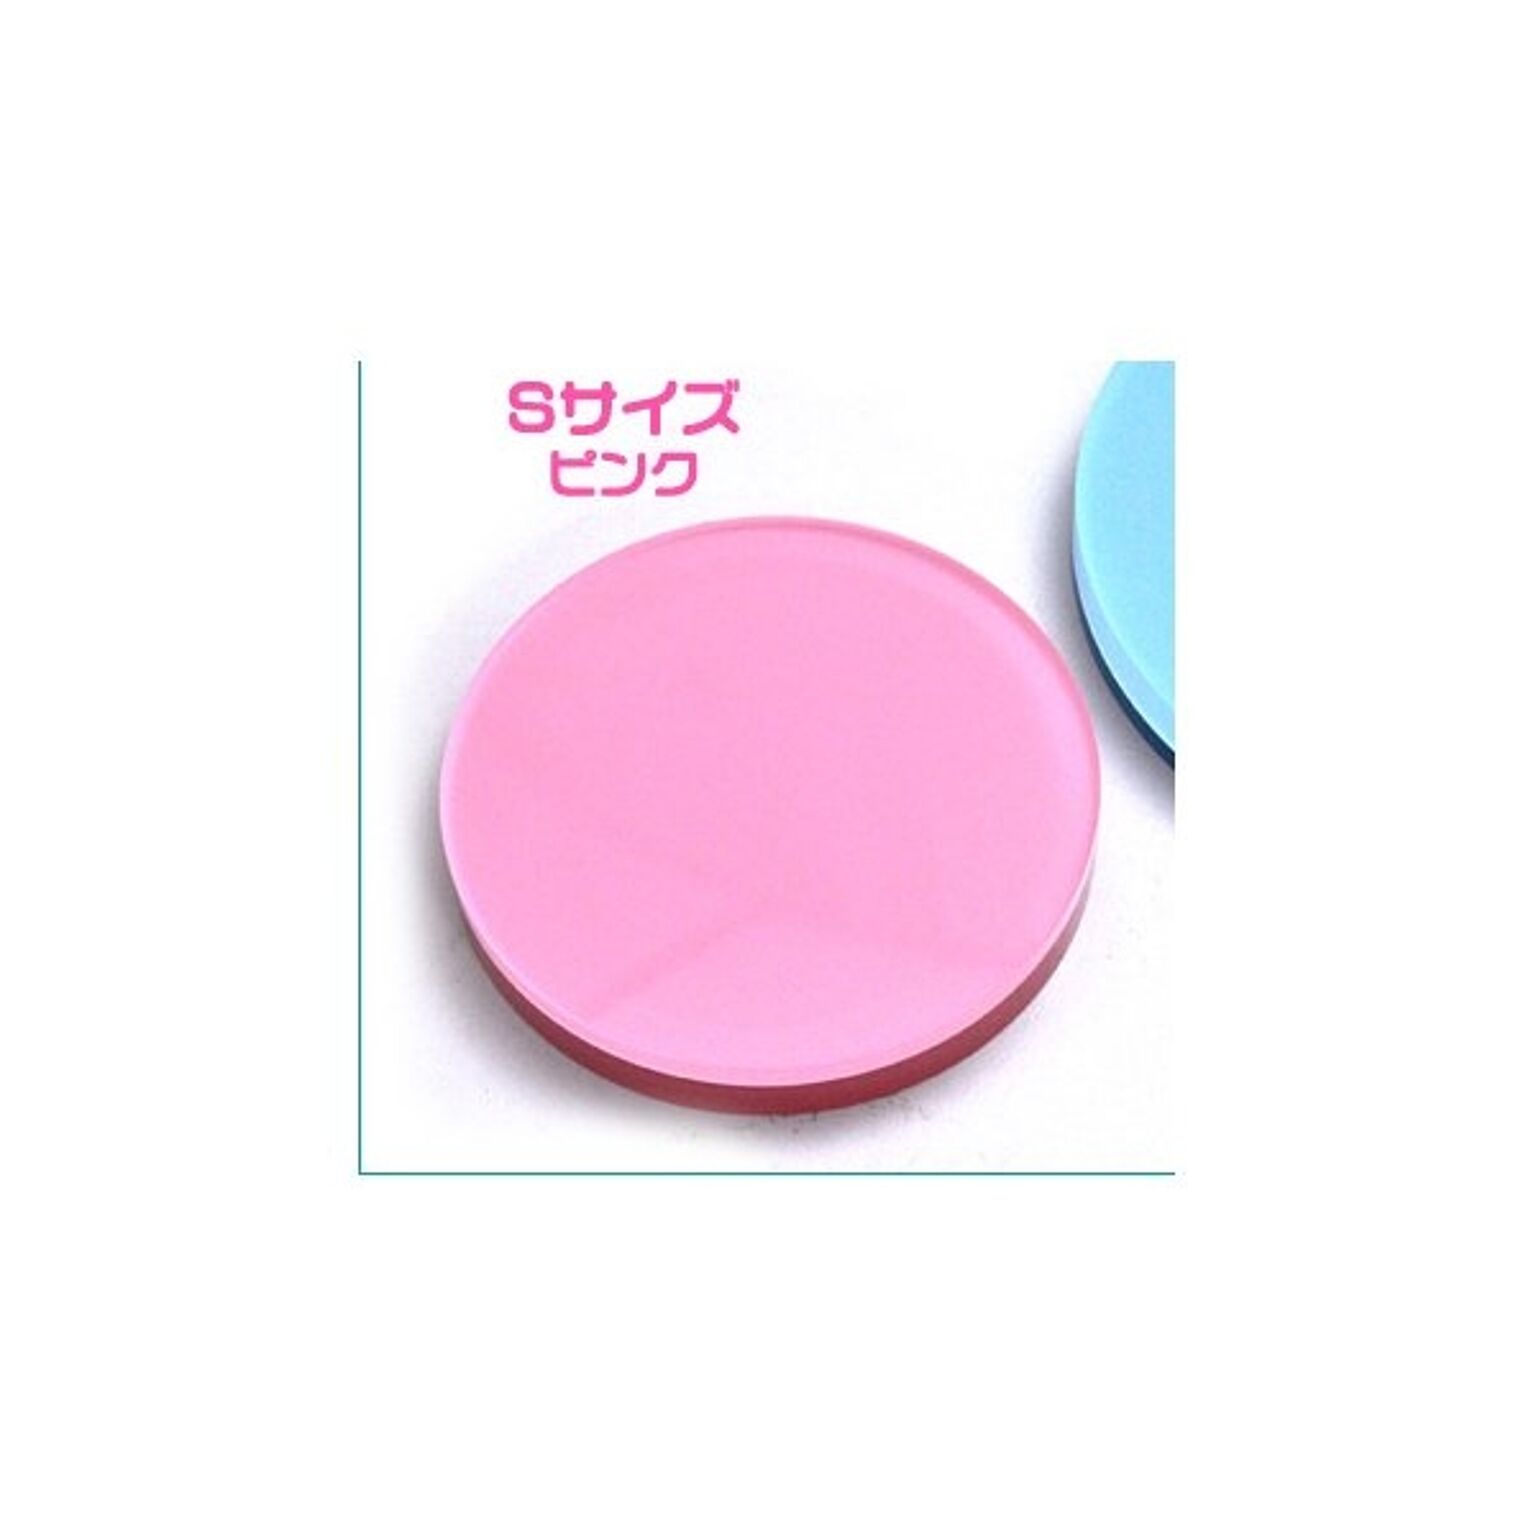 店頭ディスプレイ アクリル製ステージ　円形ピンク Sサイズ 【3枚セット】